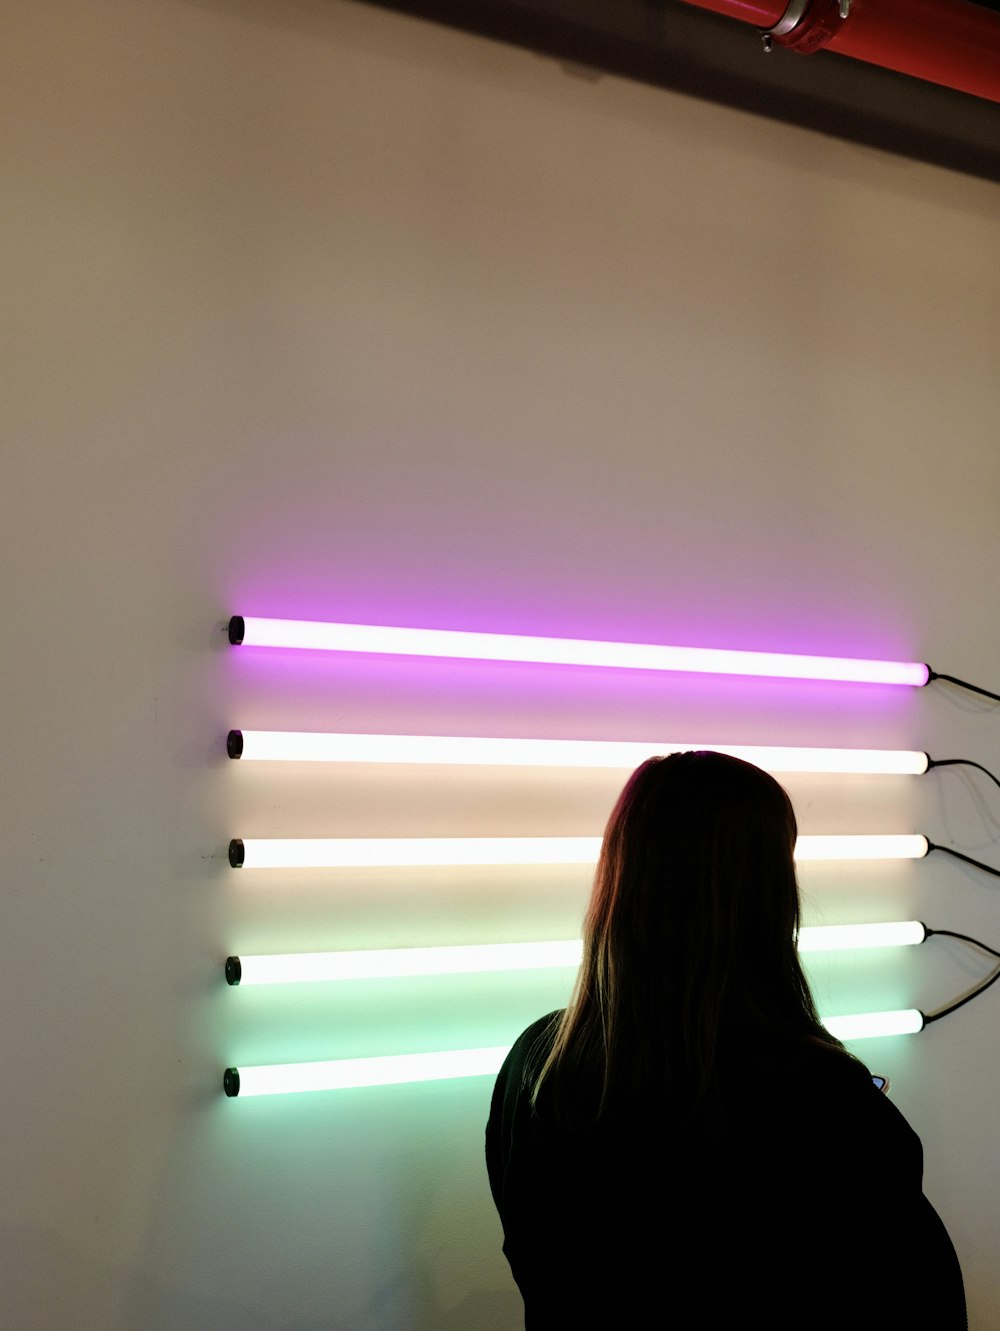 Frau neben der Wand mit eingeschalteten Leuchtstoffröhren in verschiedenen Farben